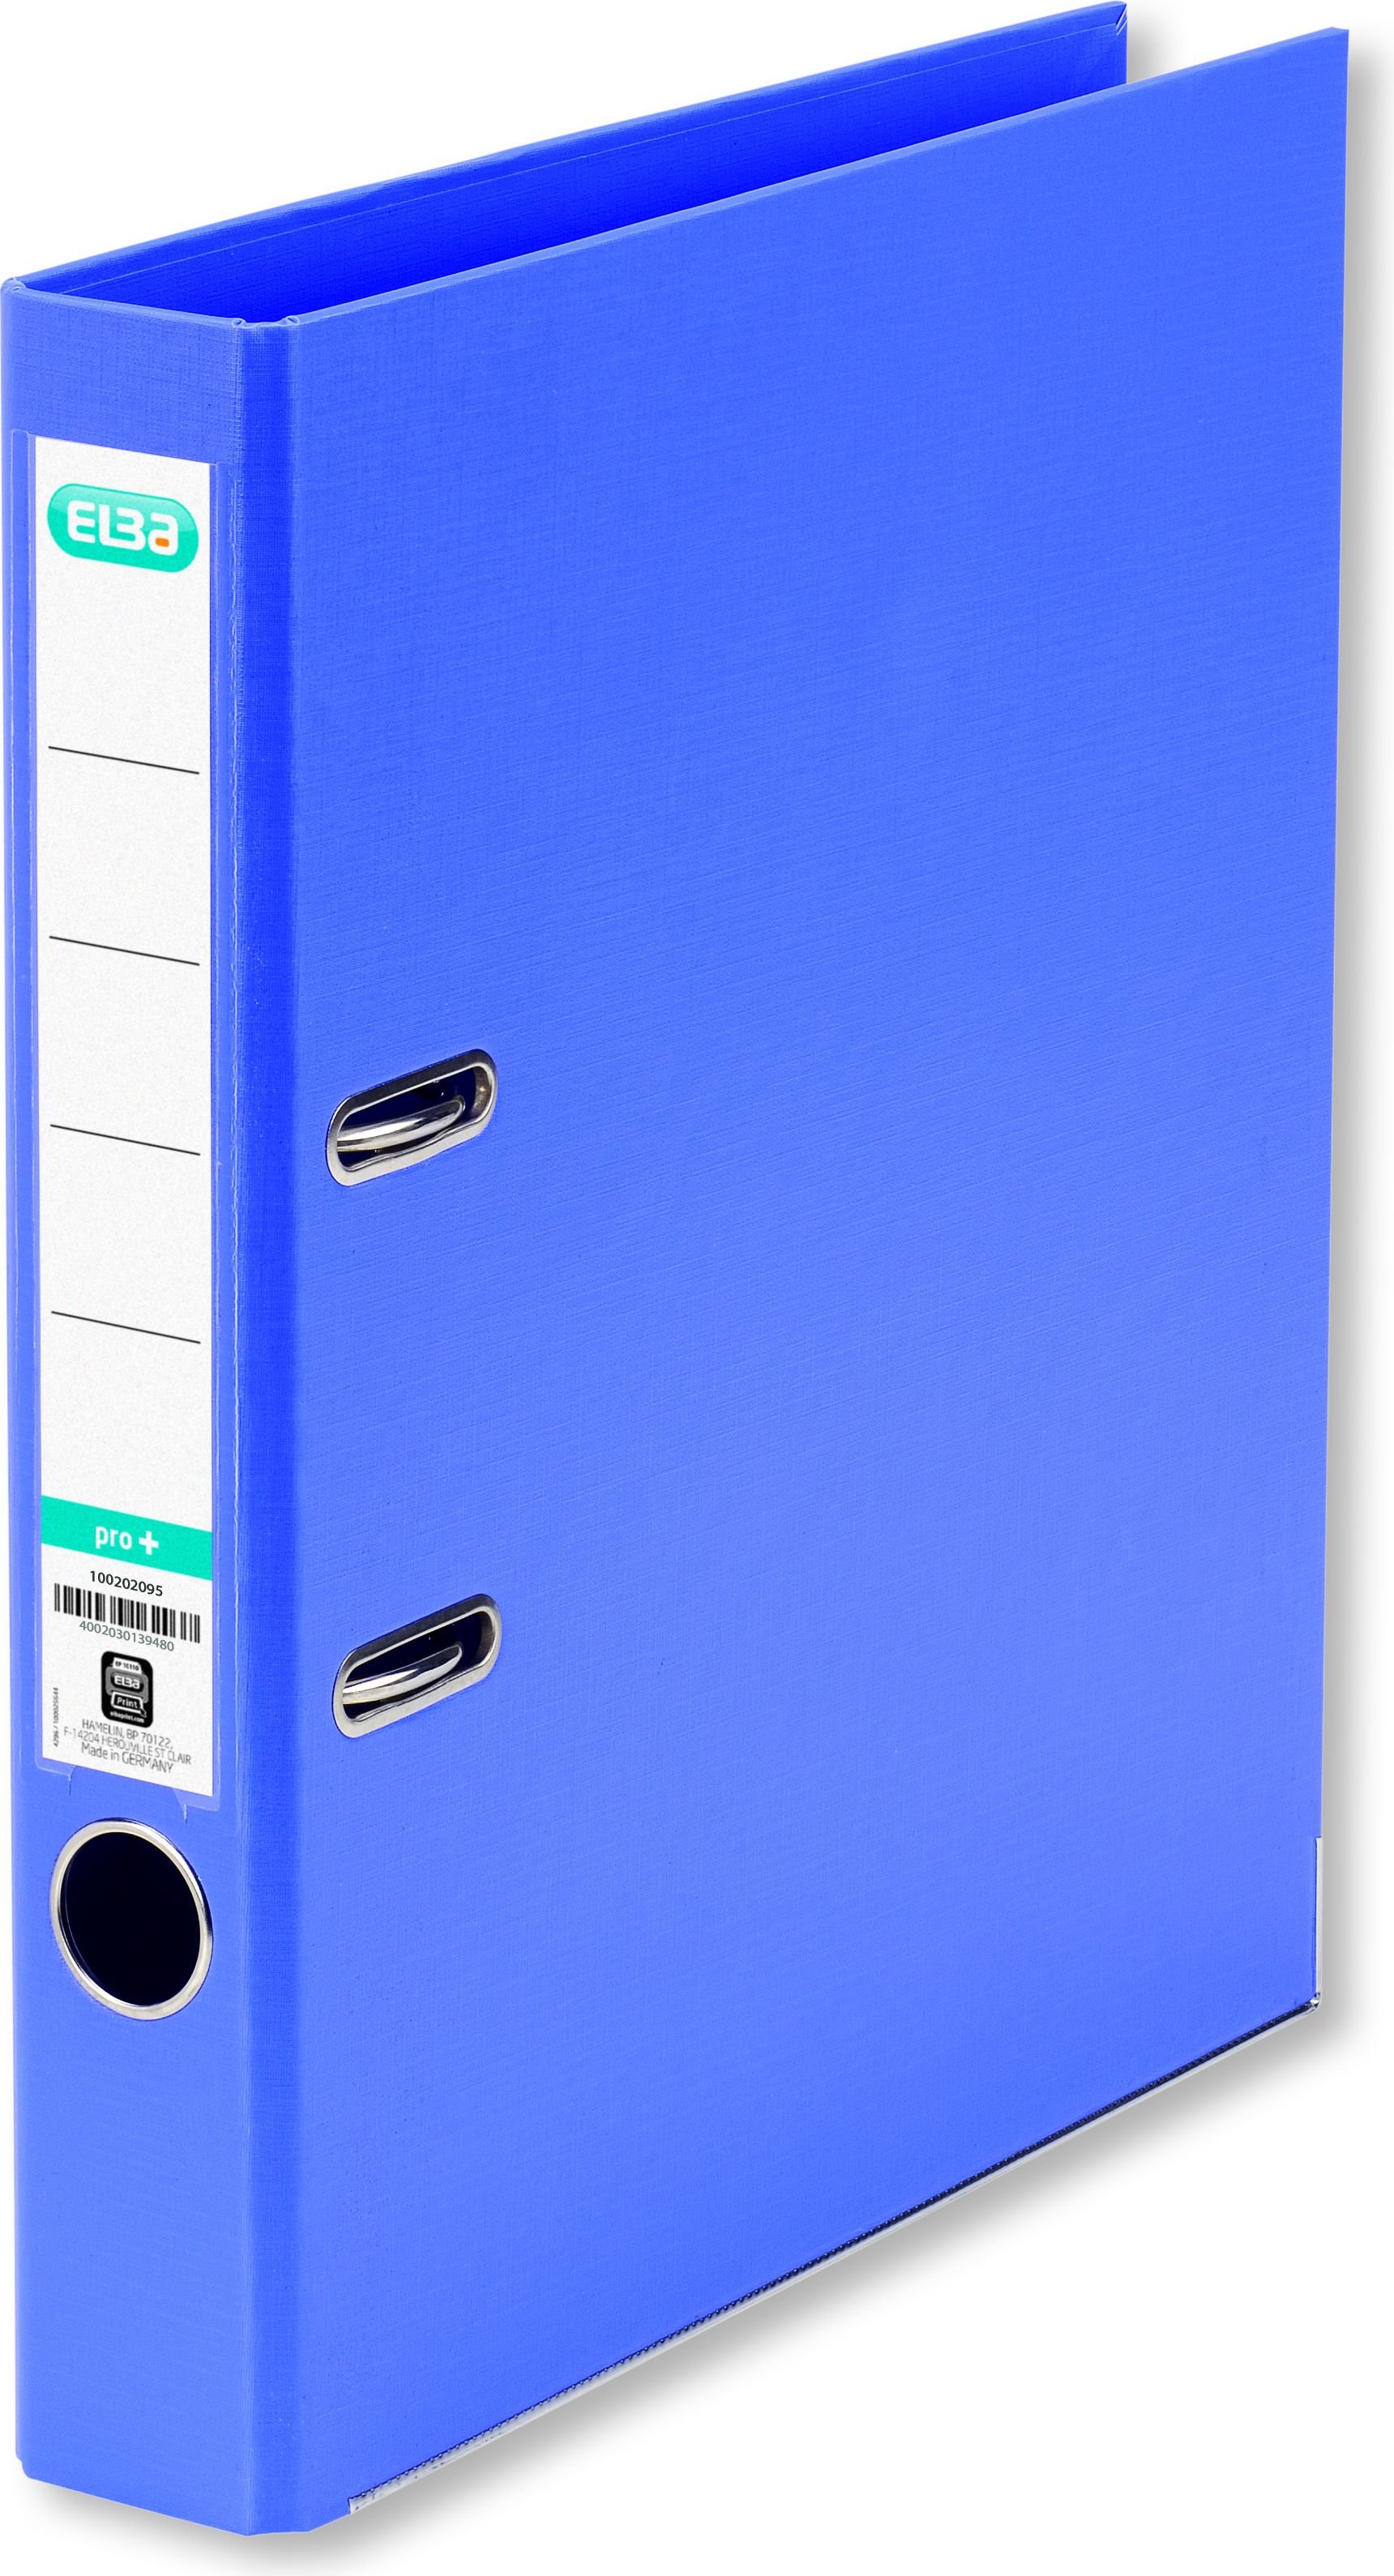 Binder Elba Pro + A4 coloana vertebrala albastru 50mm luminos